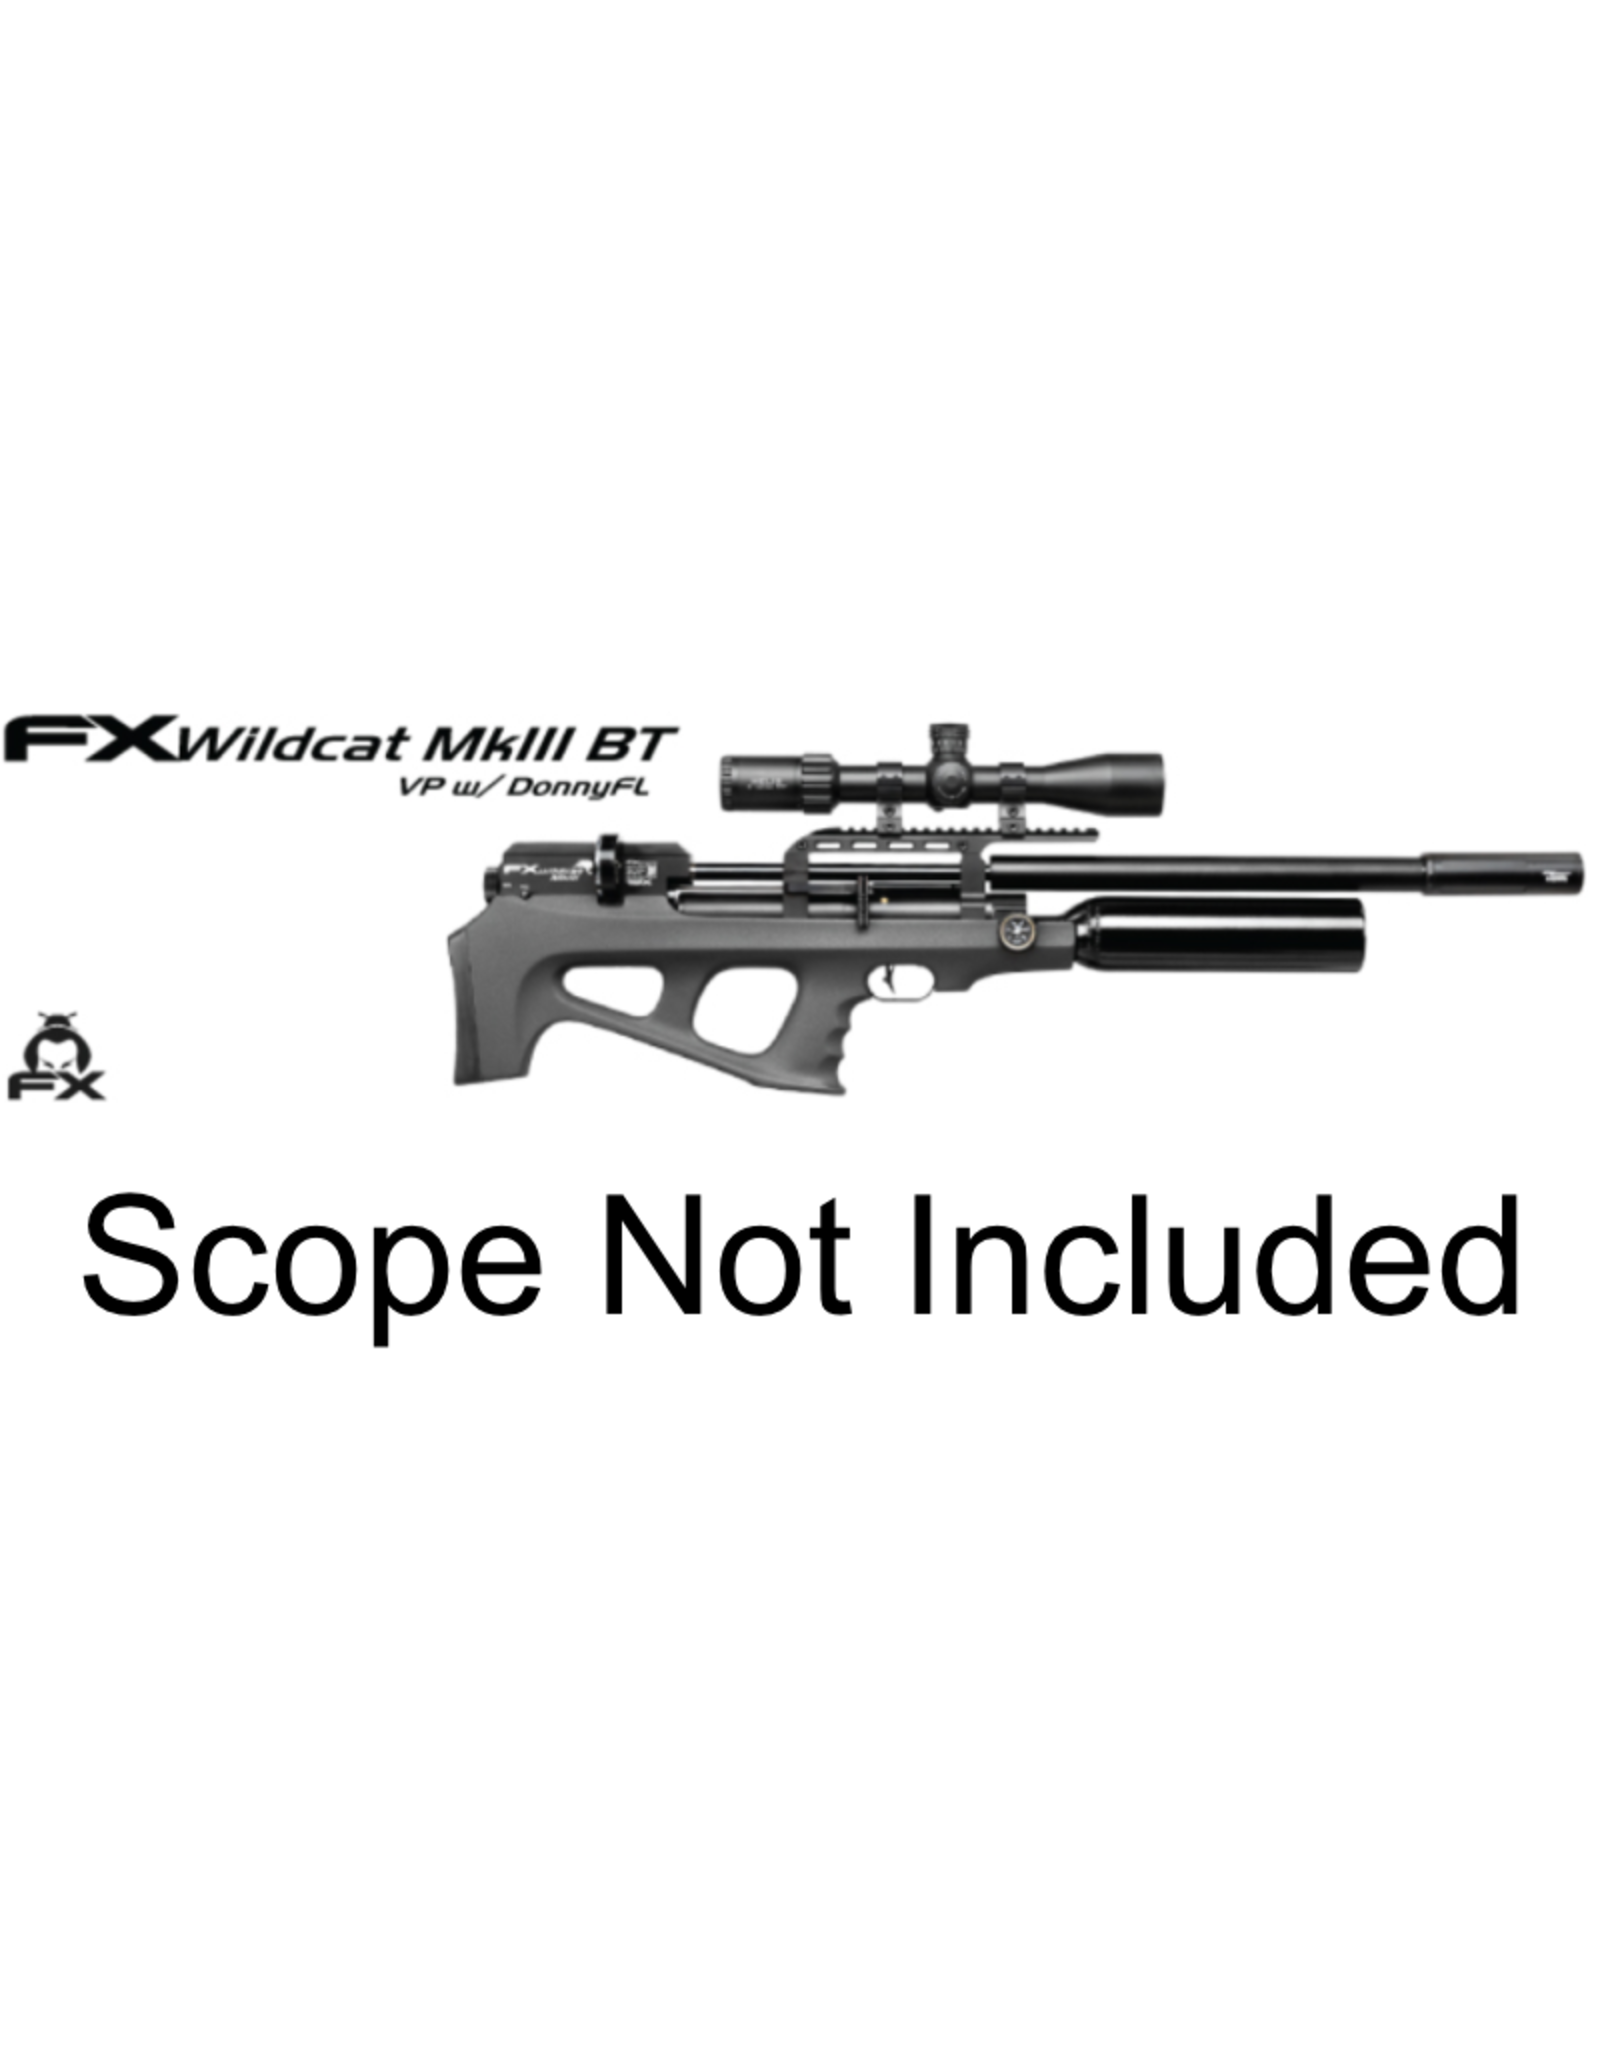 FX Airguns FX Wildcat MKIII BT Sniper, Synthetic - 0.30 caliber - - 700MM BARREL